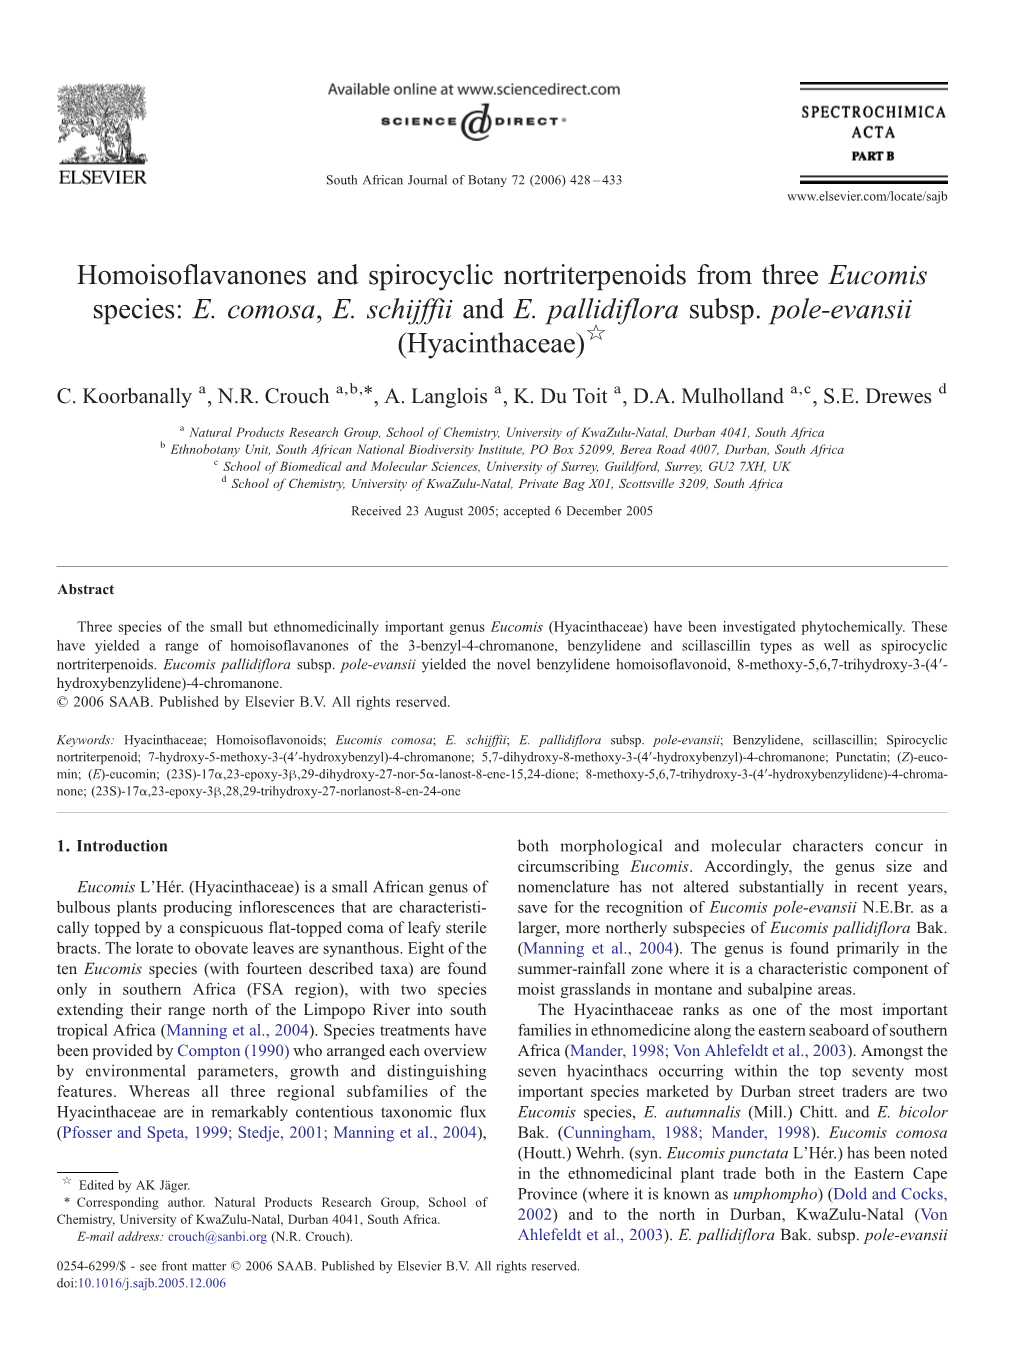 Homoisoflavanones and Spirocyclic Nortriterpenoids from Three Eucomis Species: E